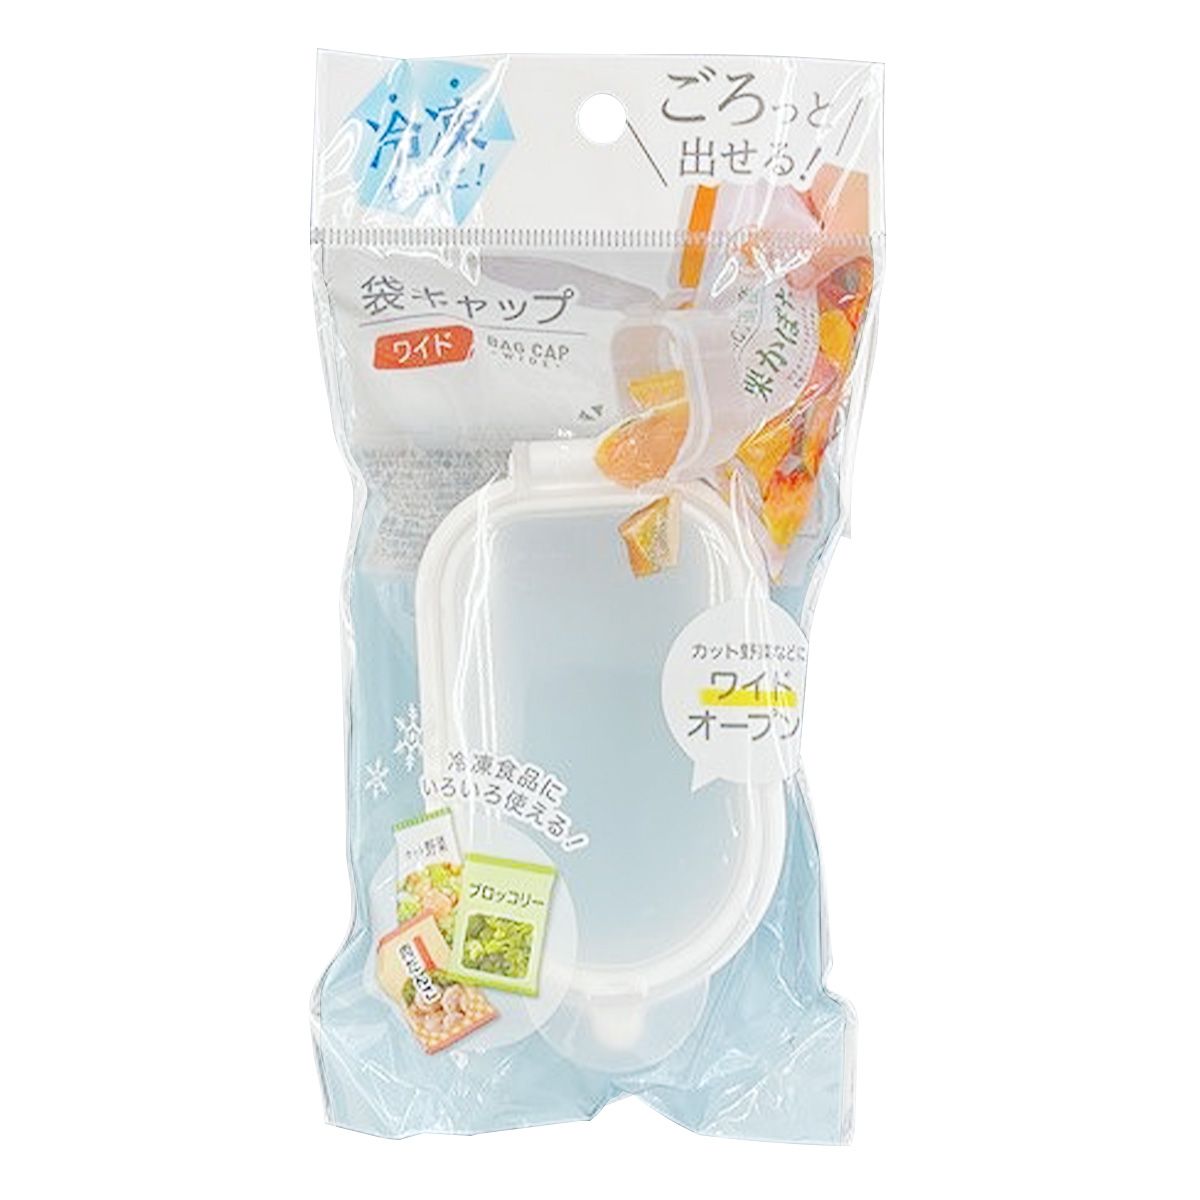 冷凍食品用袋キャップ  ワイド 345893